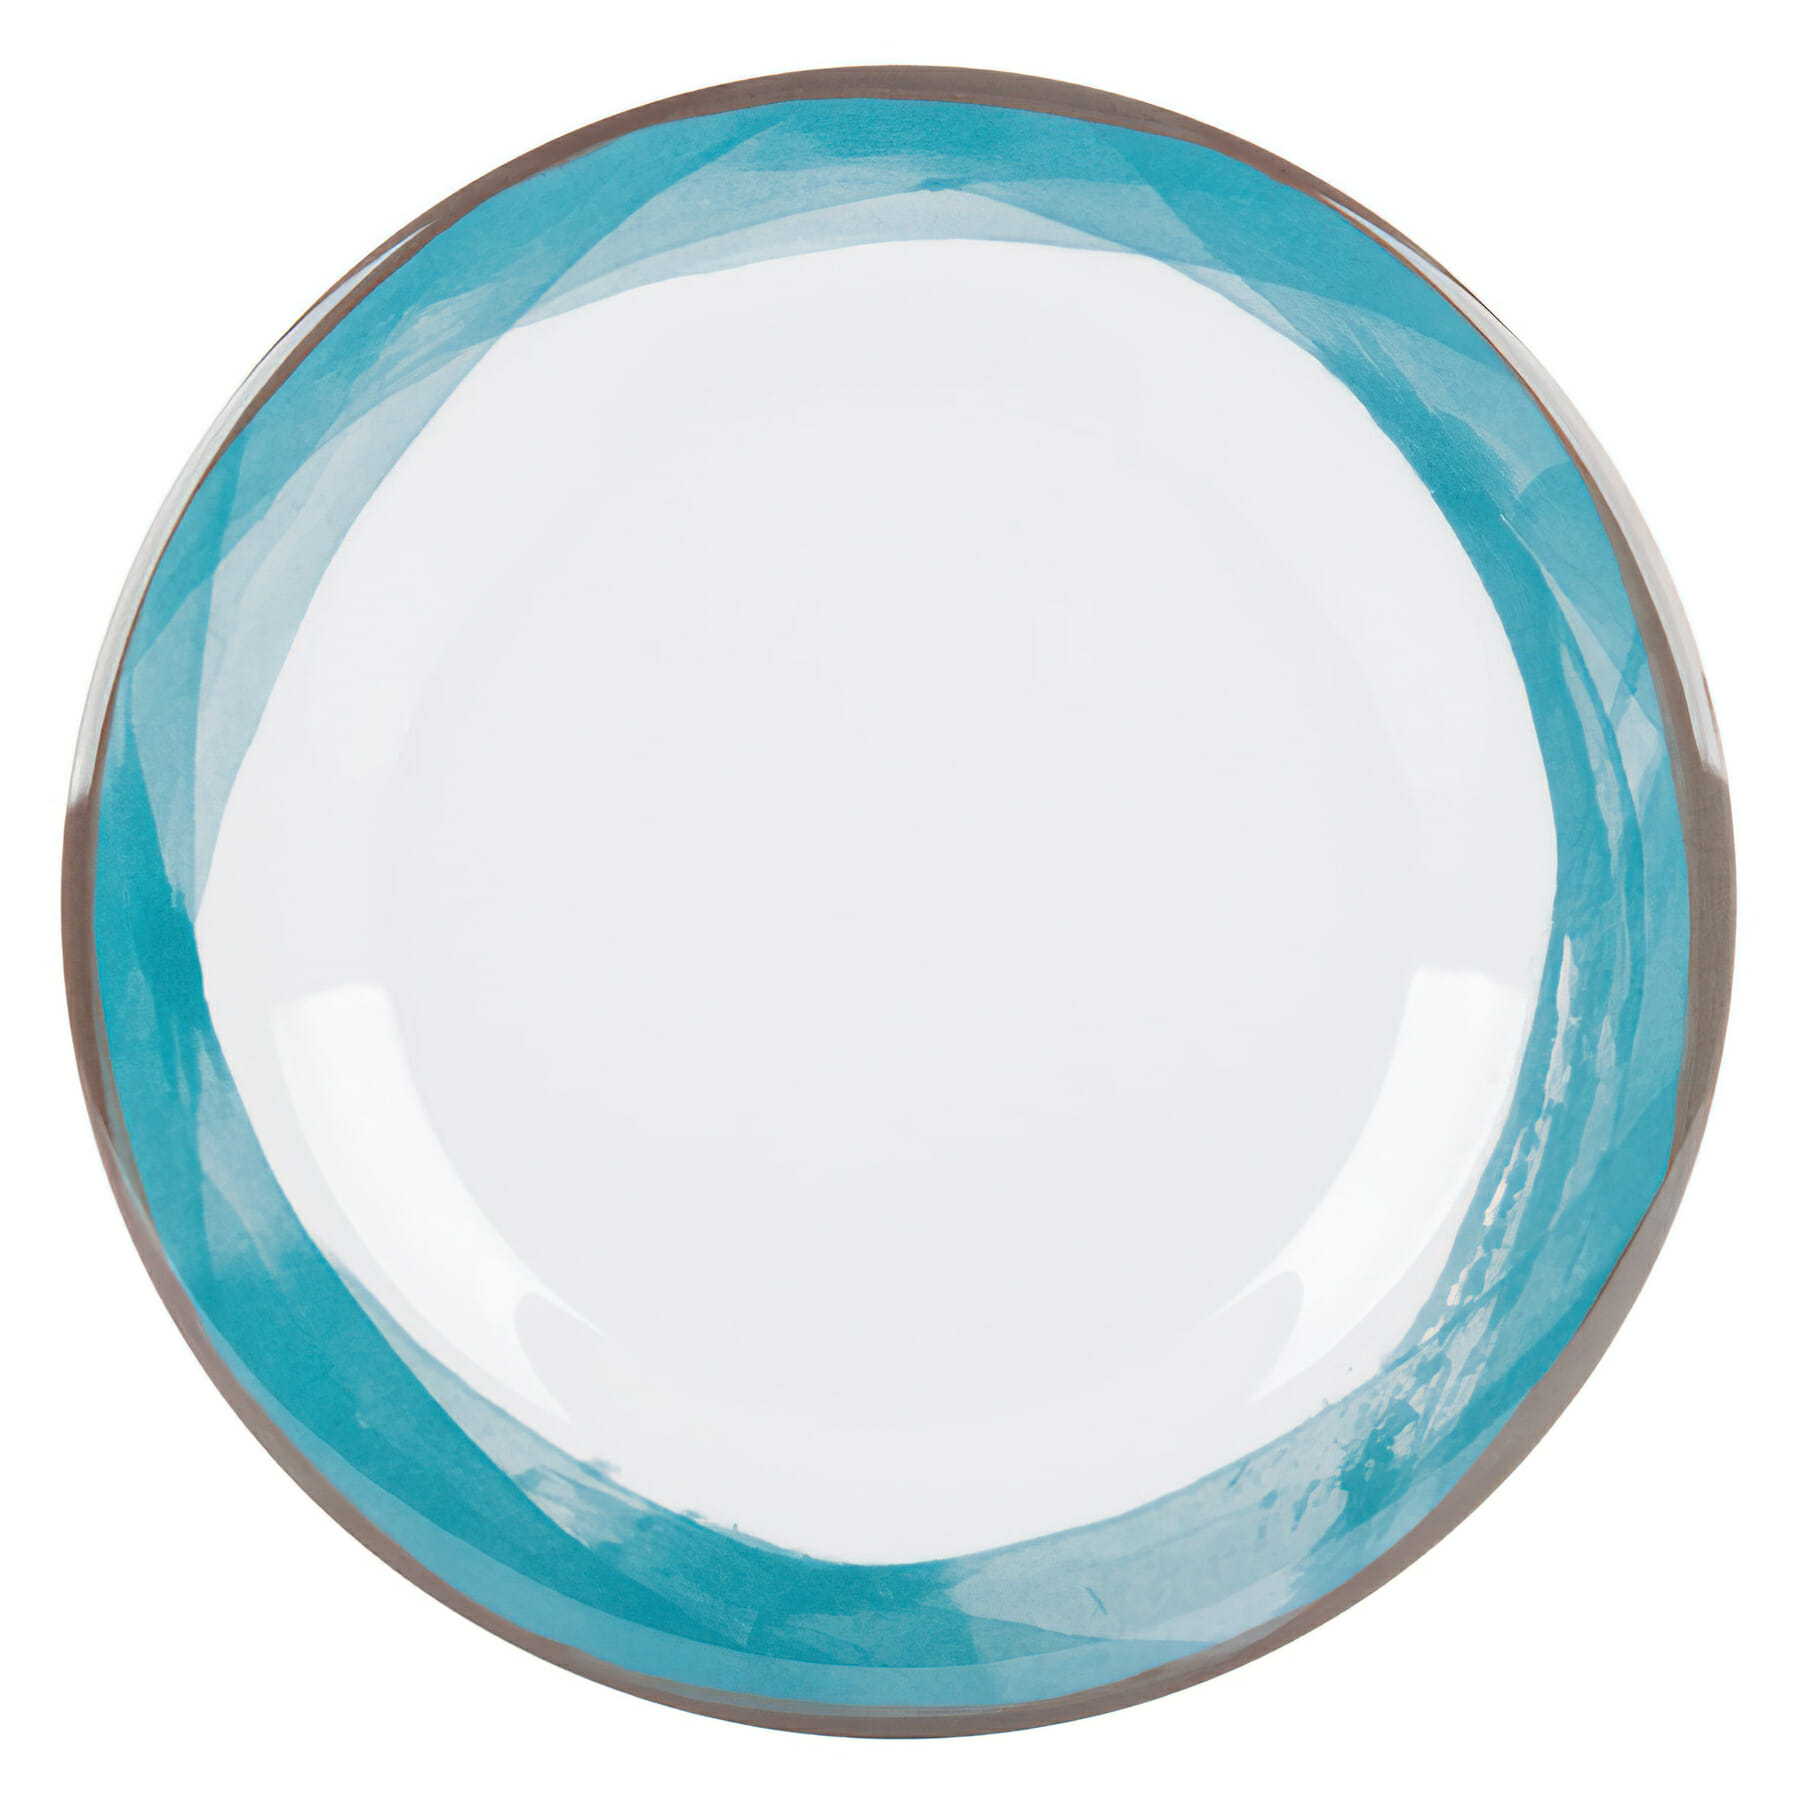 9" Wide Rim Plate, Diamond White� Base Color